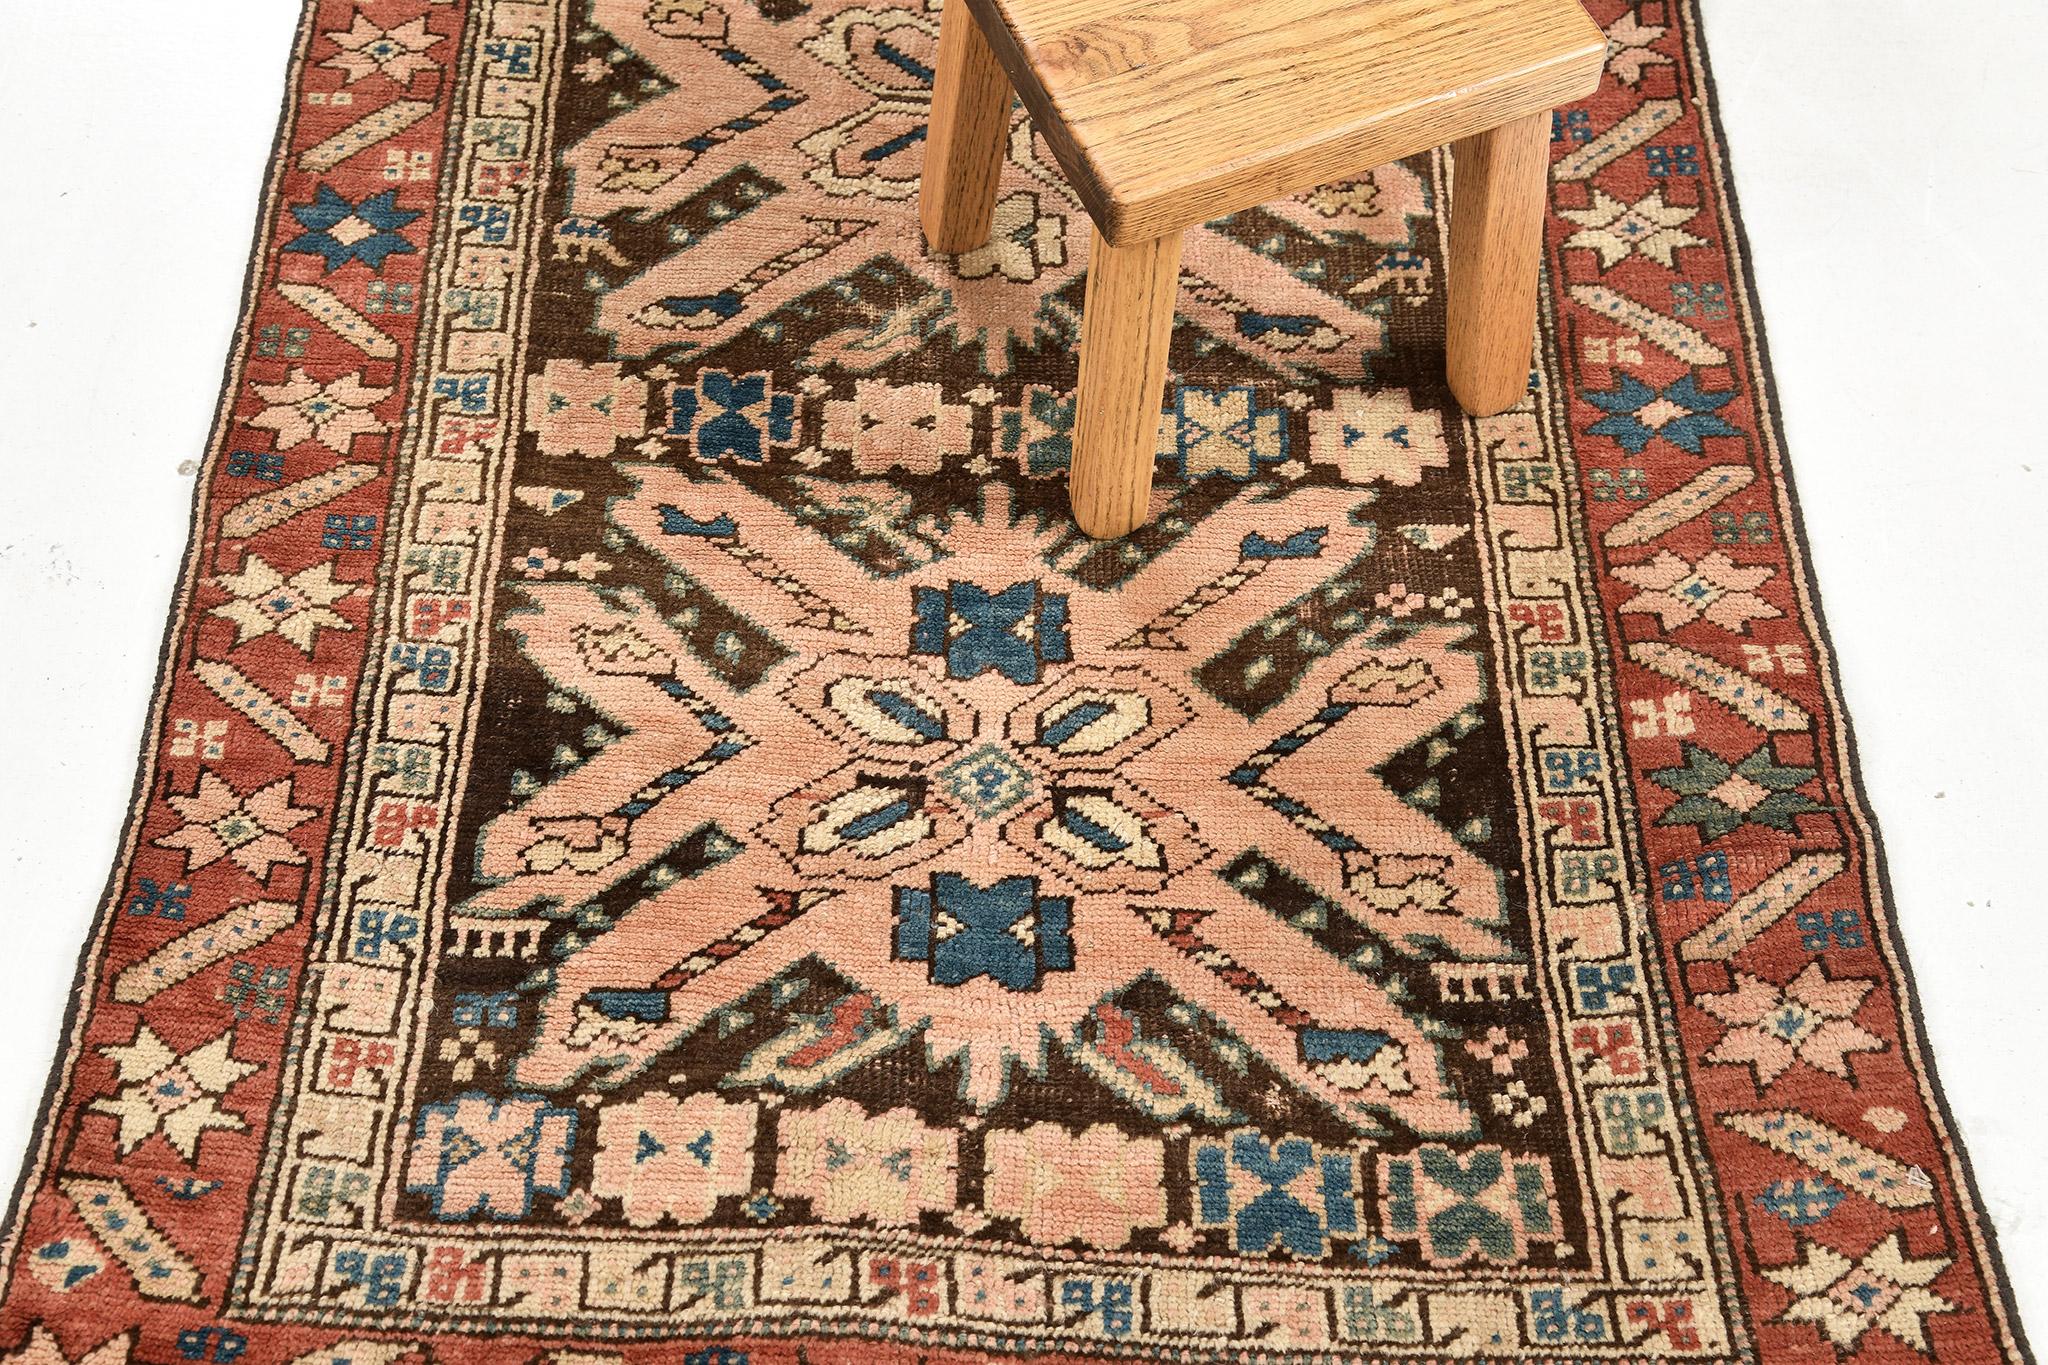 Dieser echte, antike russische Gharabagh-Teppich ist ein wunderschöner Läufer im Stammesdesign aus Wolle, der im Florgewebeverfahren hergestellt wurde. Der mehrfarbige Teppich wird von einer errötenden Gitterbordüre eingerahmt. Besuchen Sie unser